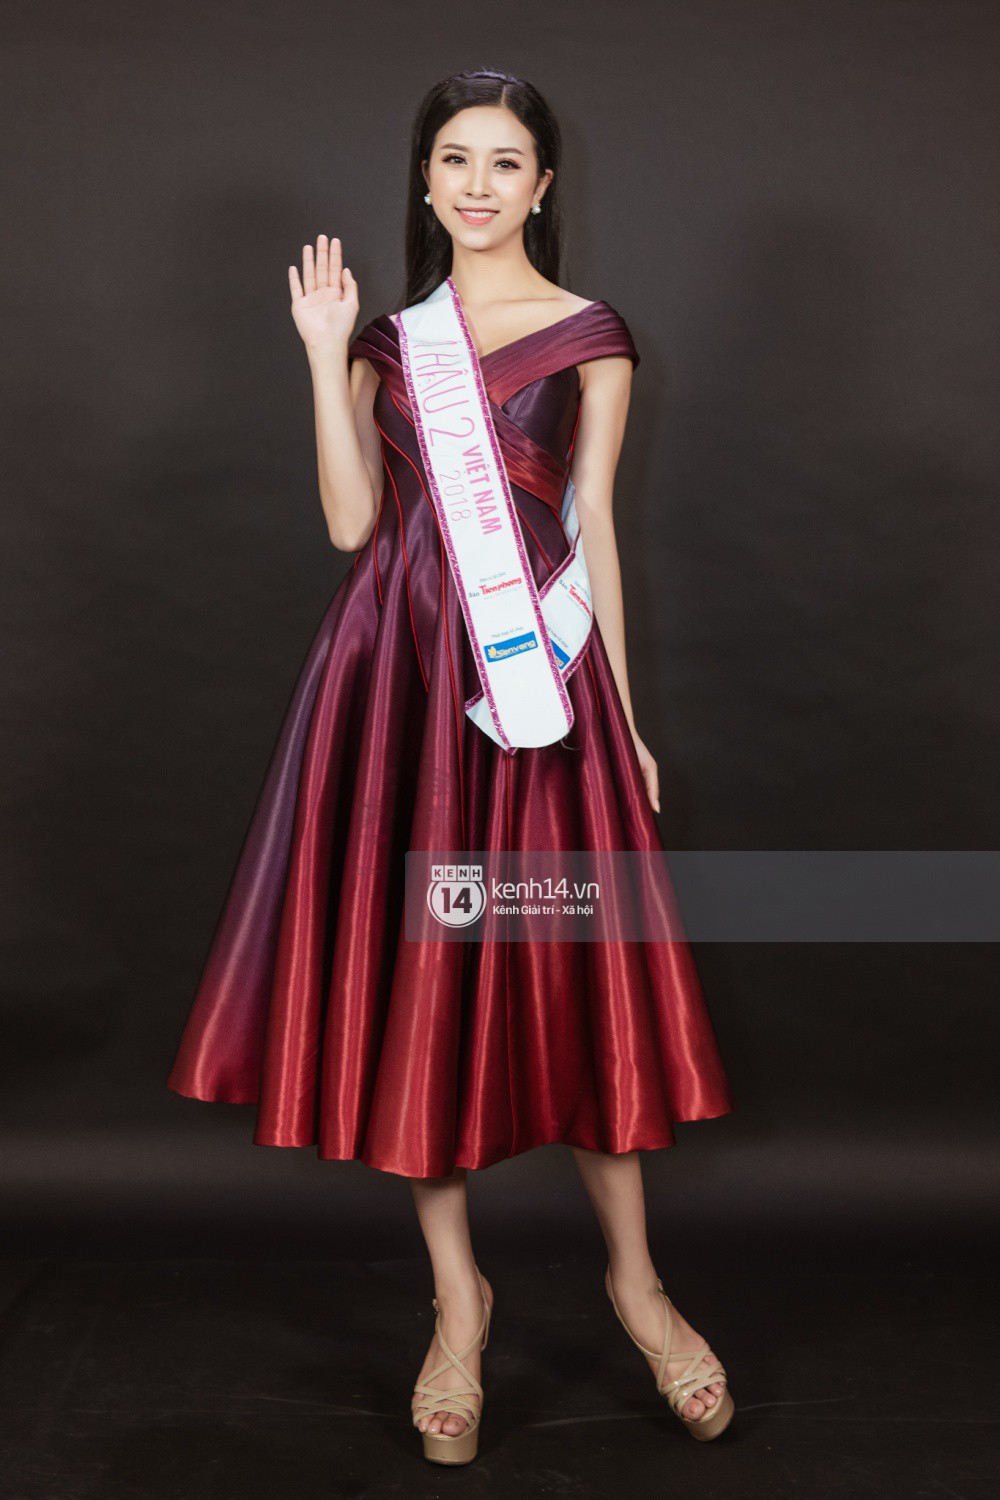 Ngắm cận vẻ đẹp của Top 3 Hoa hậu Việt Nam 2018: Mỹ nhân 2000 được khen sắc sảo, 2 nàng Á mười phân vẹn mười - Ảnh 11.